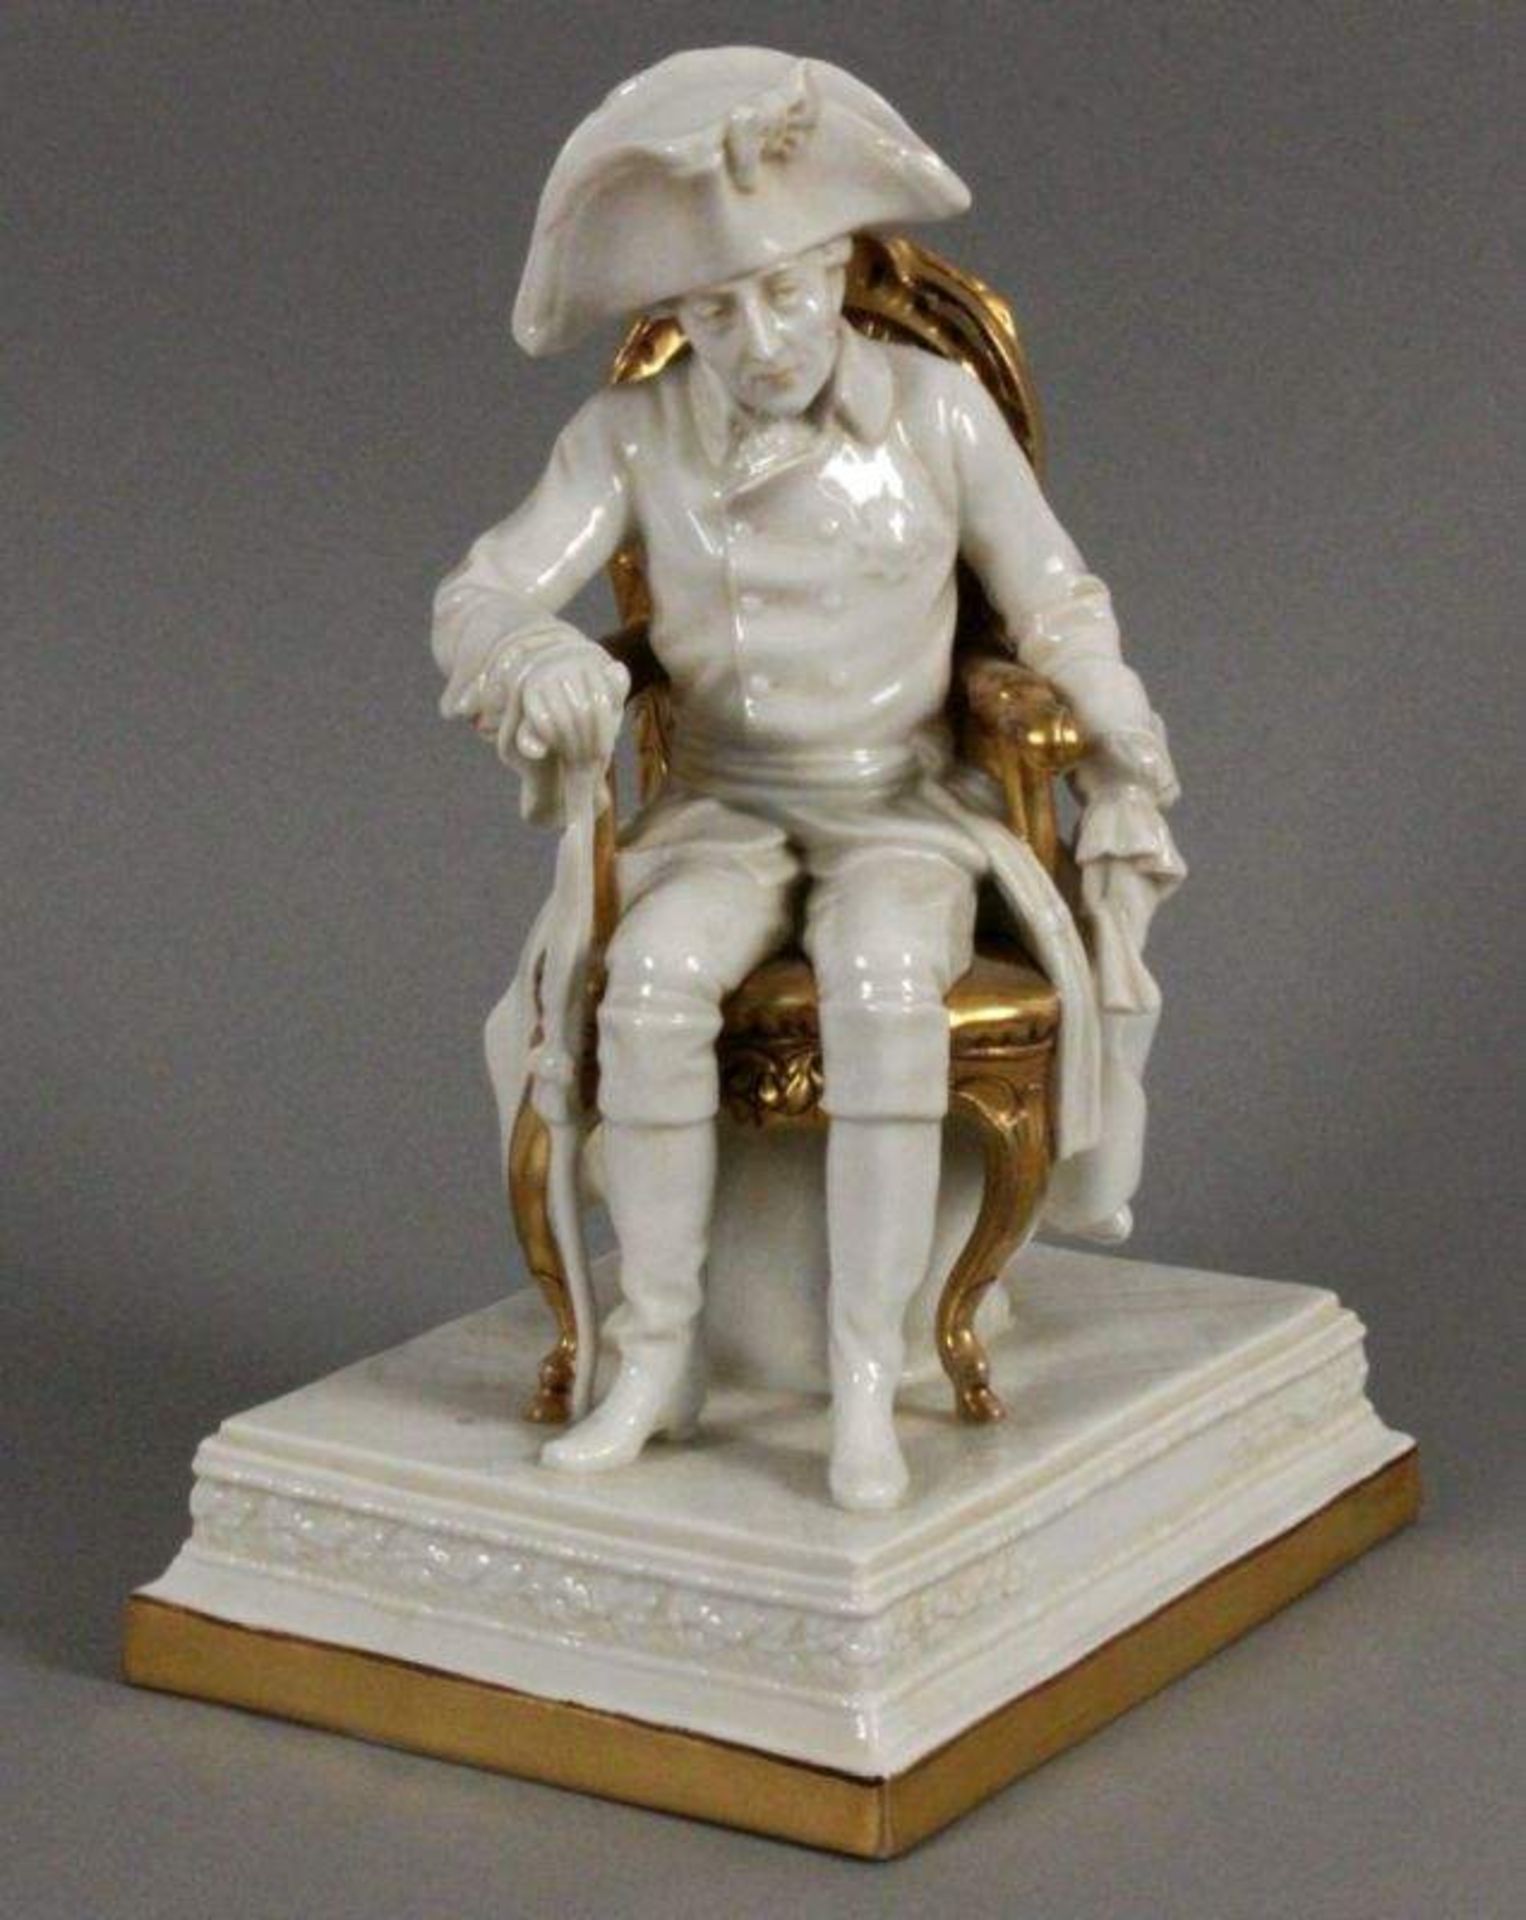 FRIEDRICH II DER GROSSEScheibe-Alsbach Auf einen goldenen Stuhl sitzender preußischer König mit